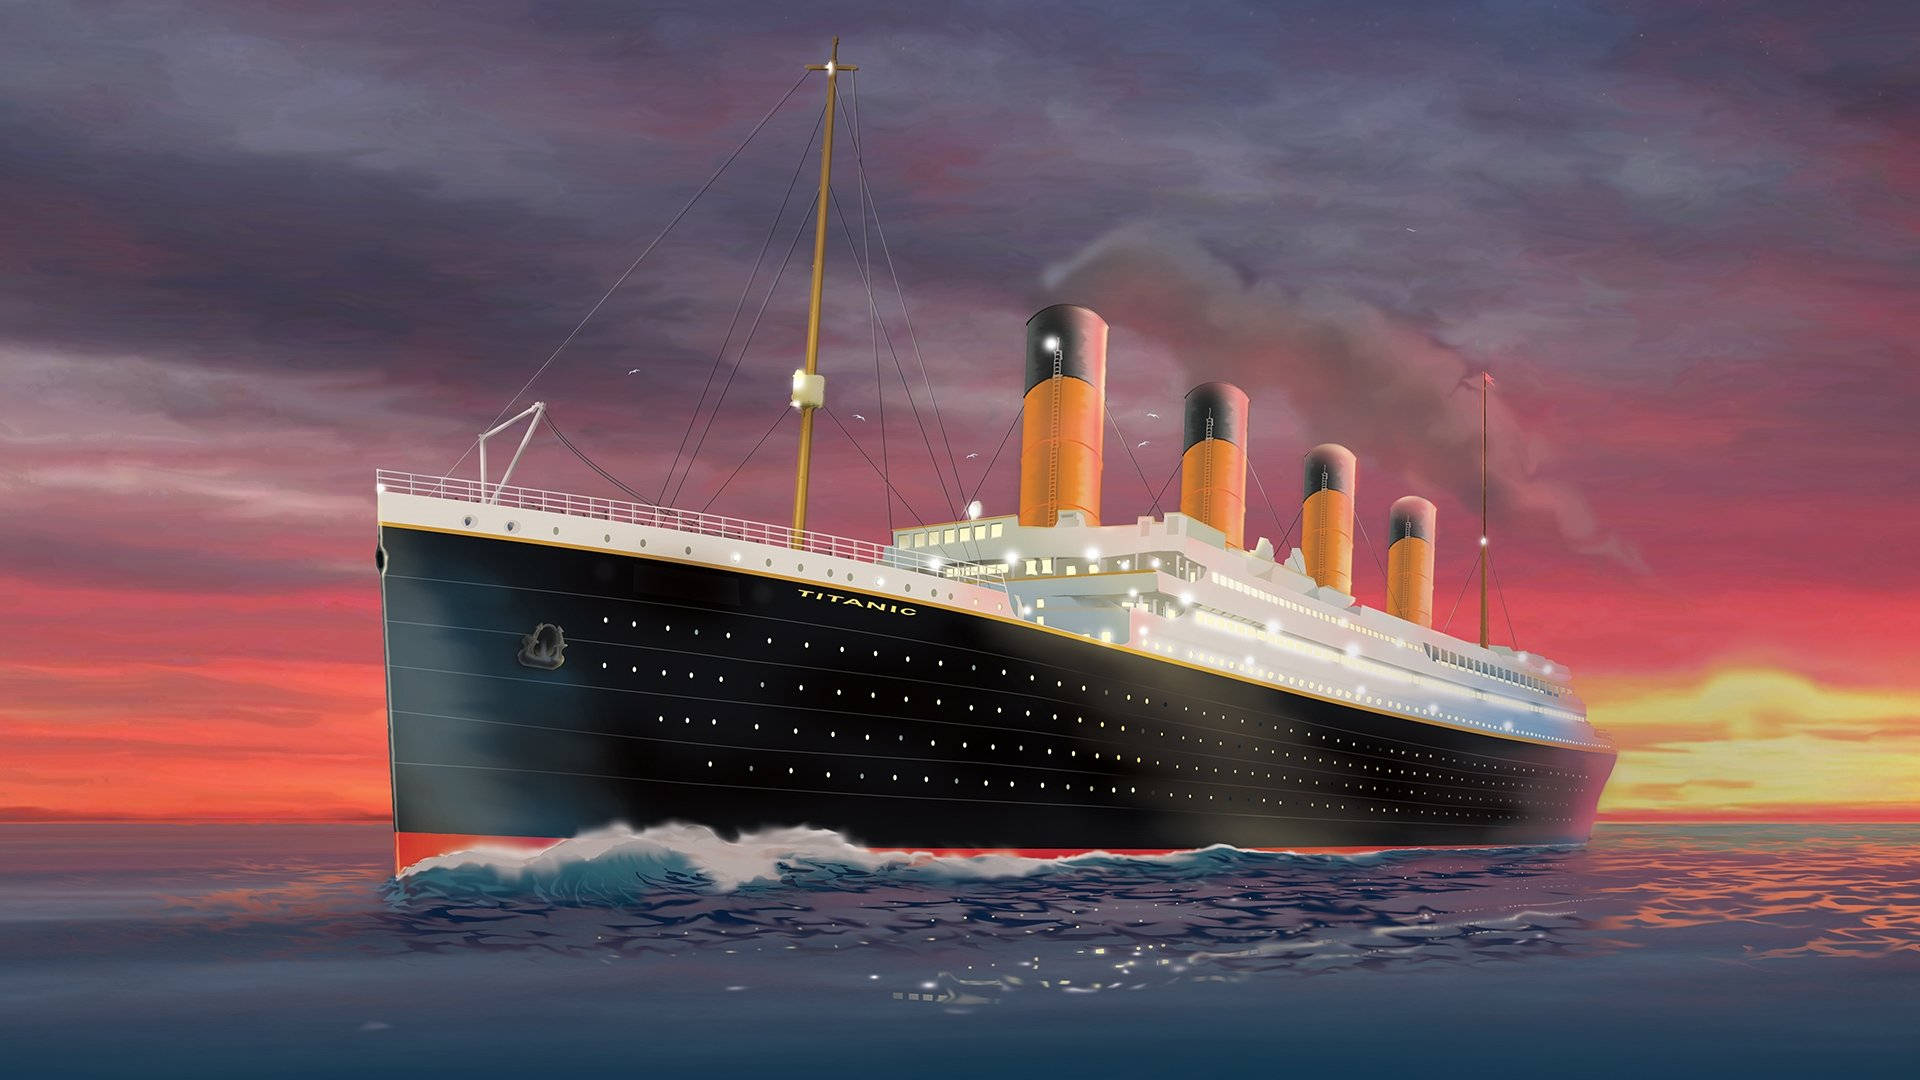 Mô Hình Tàu Thuỷ RMS Titanic  Trưng Bày Sang Trọng  Gỗ Tự Nhiên  Thân  80cm Đèn LED Màu Showroom Tàu Thuyền Mô Hình Quà Tặng Gỗ Mỹ Nghệ